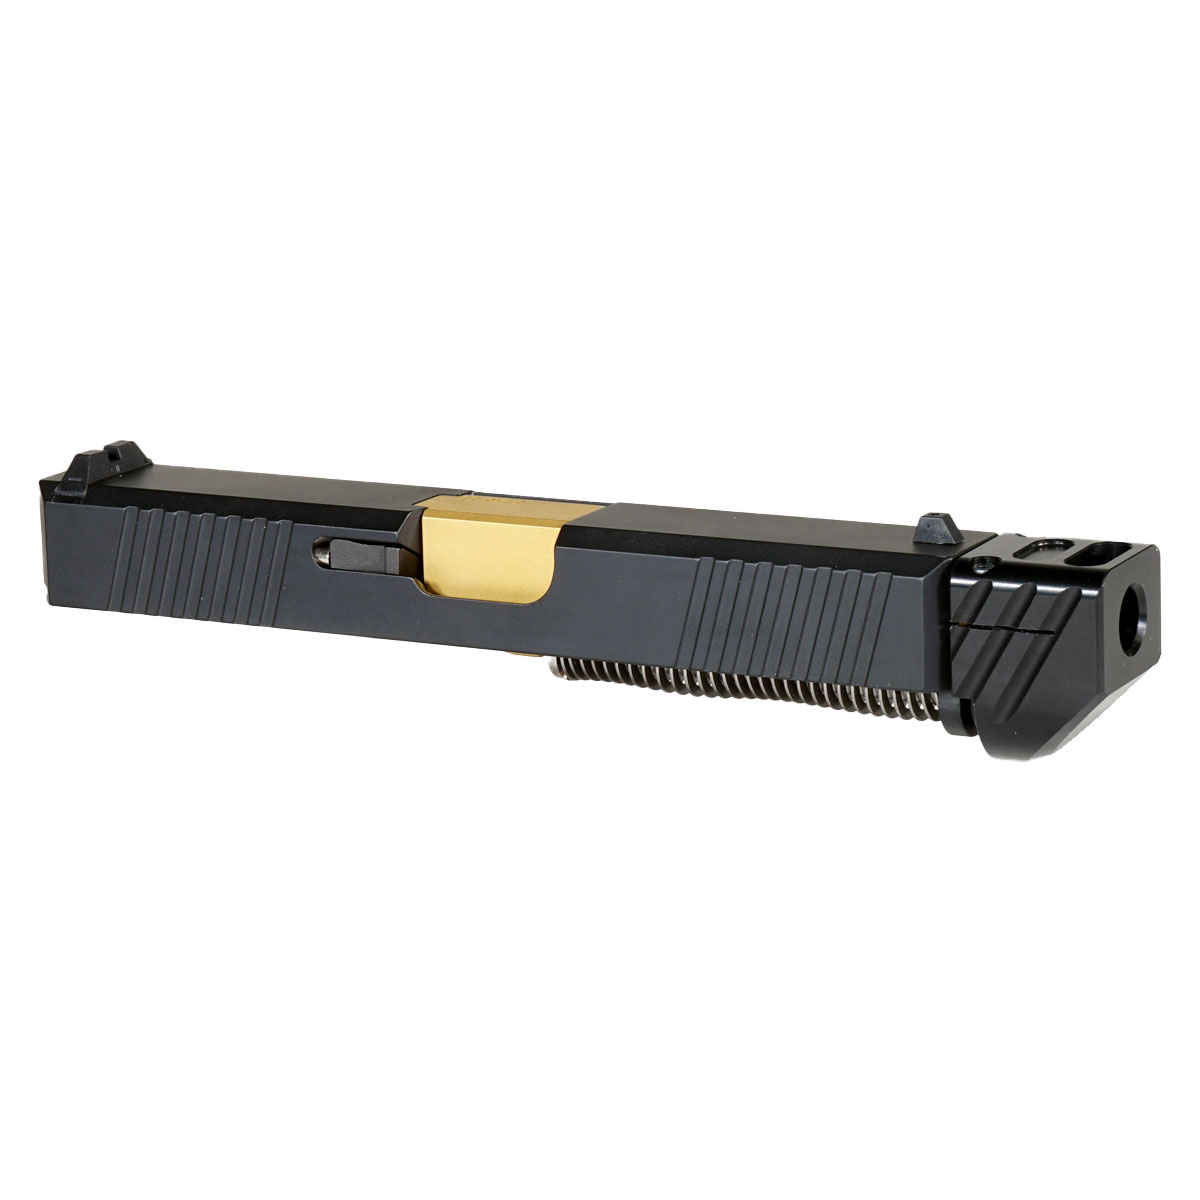 MMC 'Oakley V4 w/ Black Compensator' 9mm Complete Slide Kit - Glock 19 Gen 1-3 Compatible